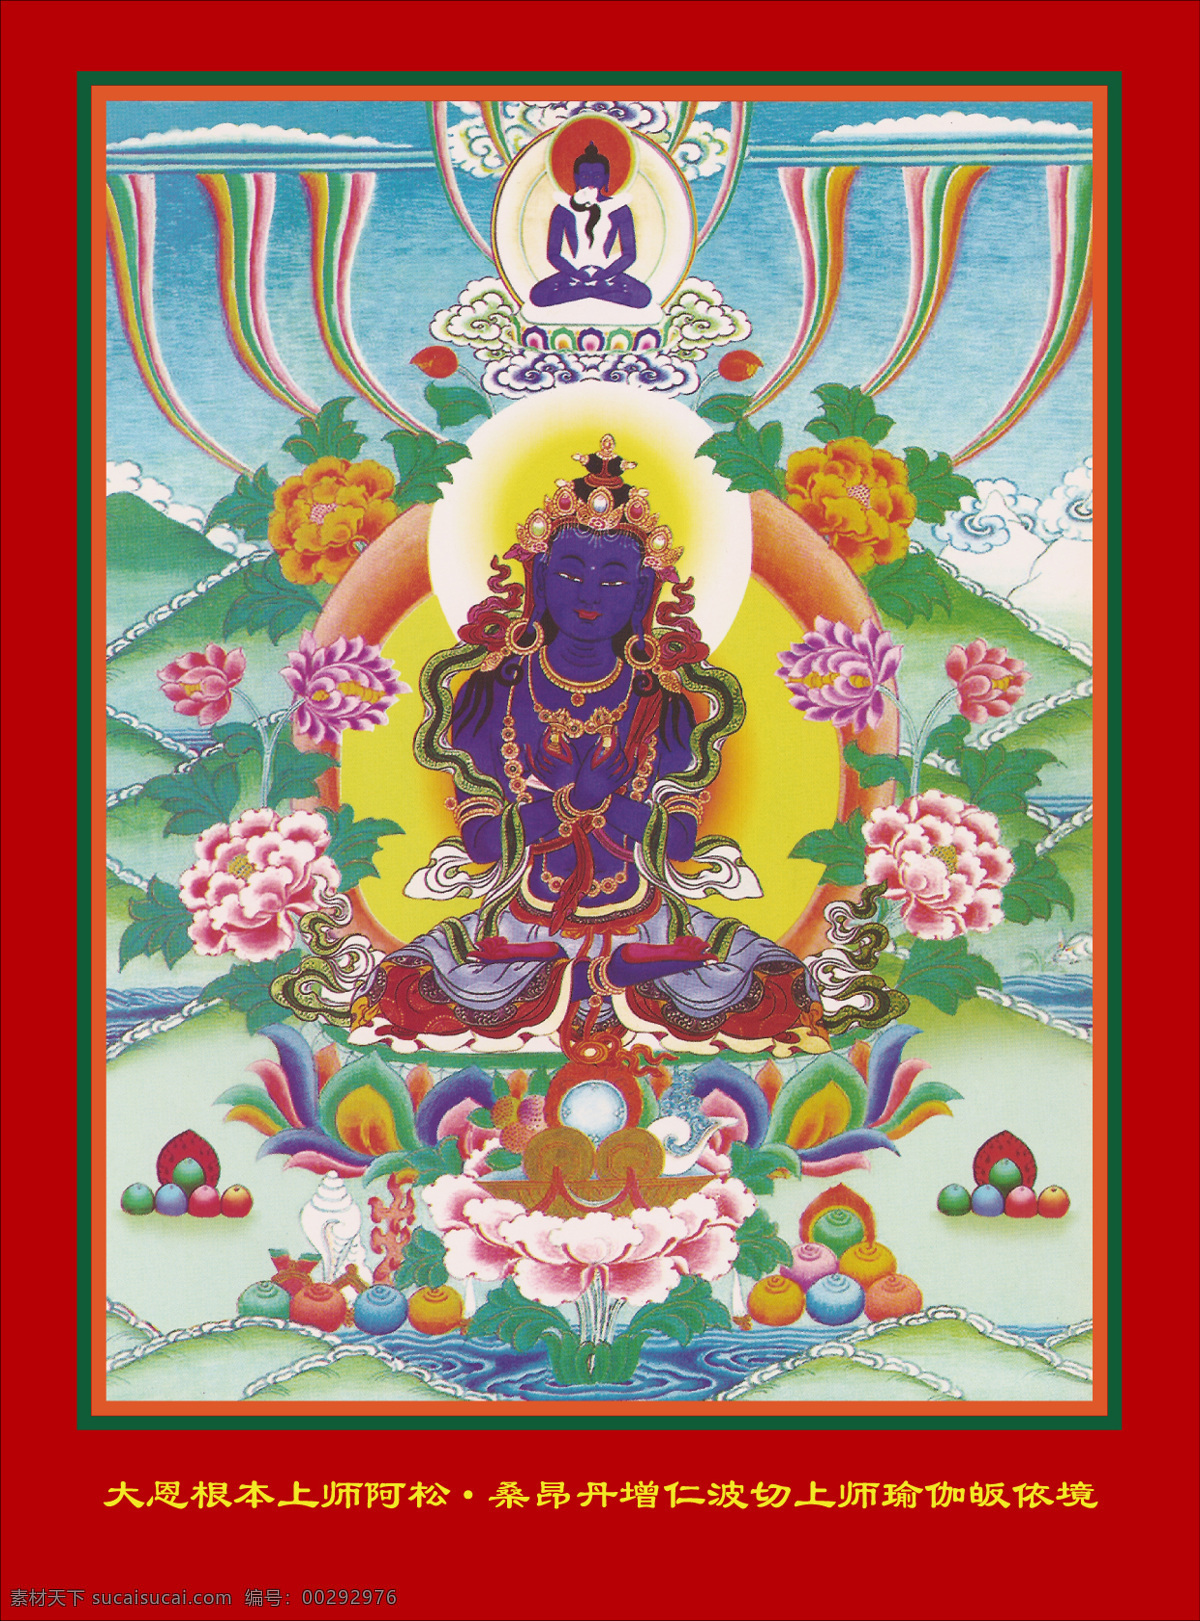 上师法相 老唐卡 唐卡 传承 西藏 藏传 佛教 密宗 法器 佛 菩萨 成就 成就者 大德 喇嘛 活佛 宗教信仰 文化艺术